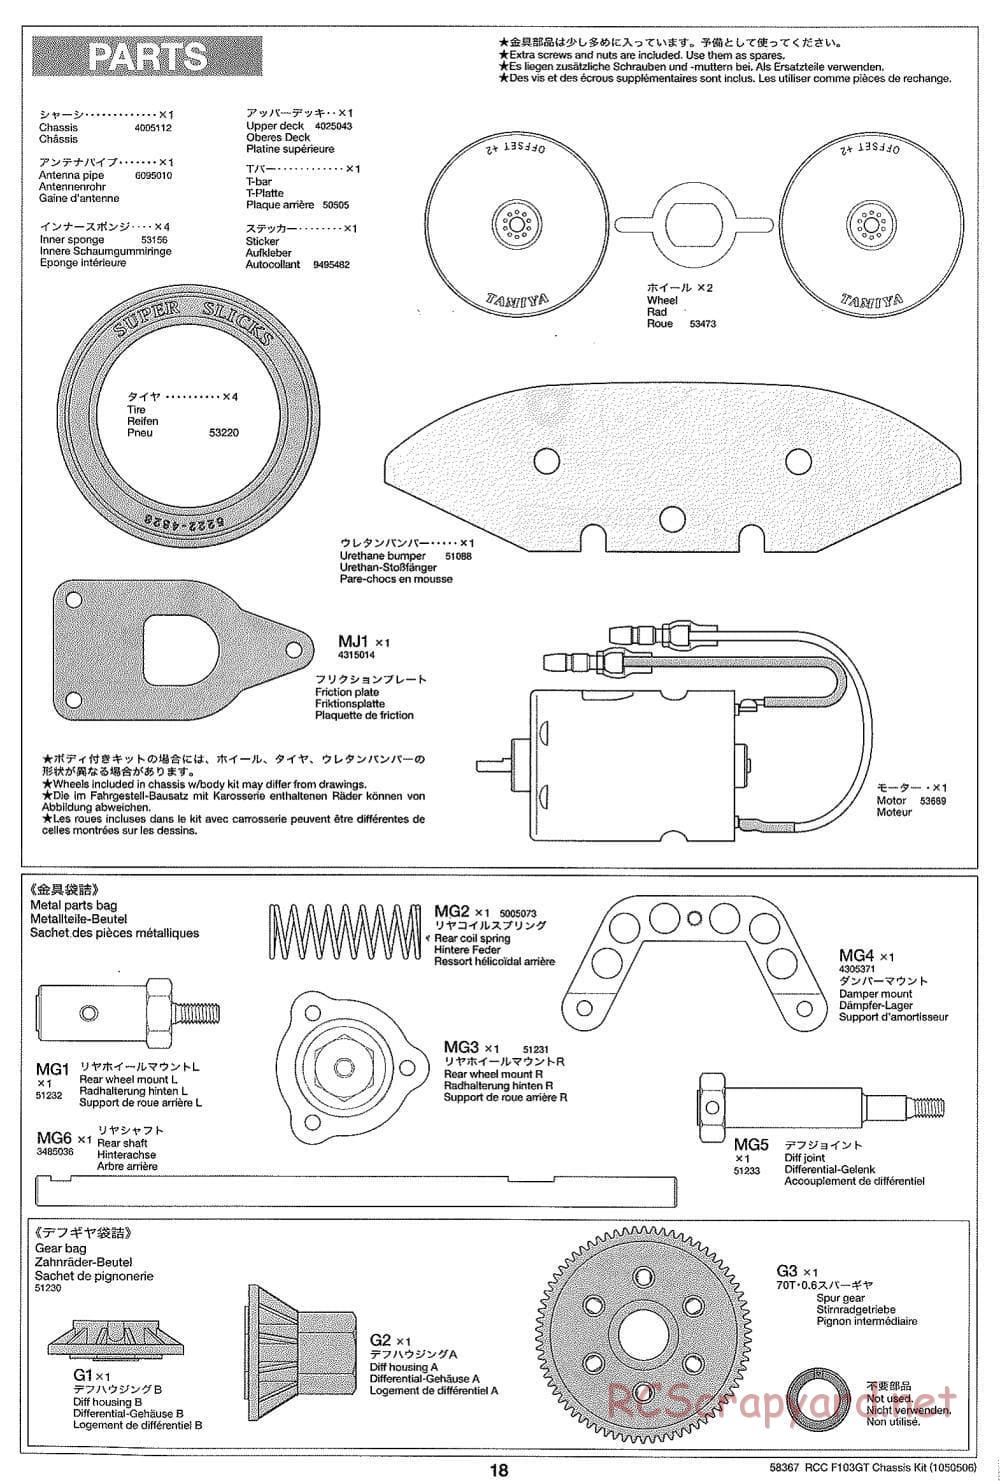 Tamiya - F103GT Chassis Kit - Manual - Page 18